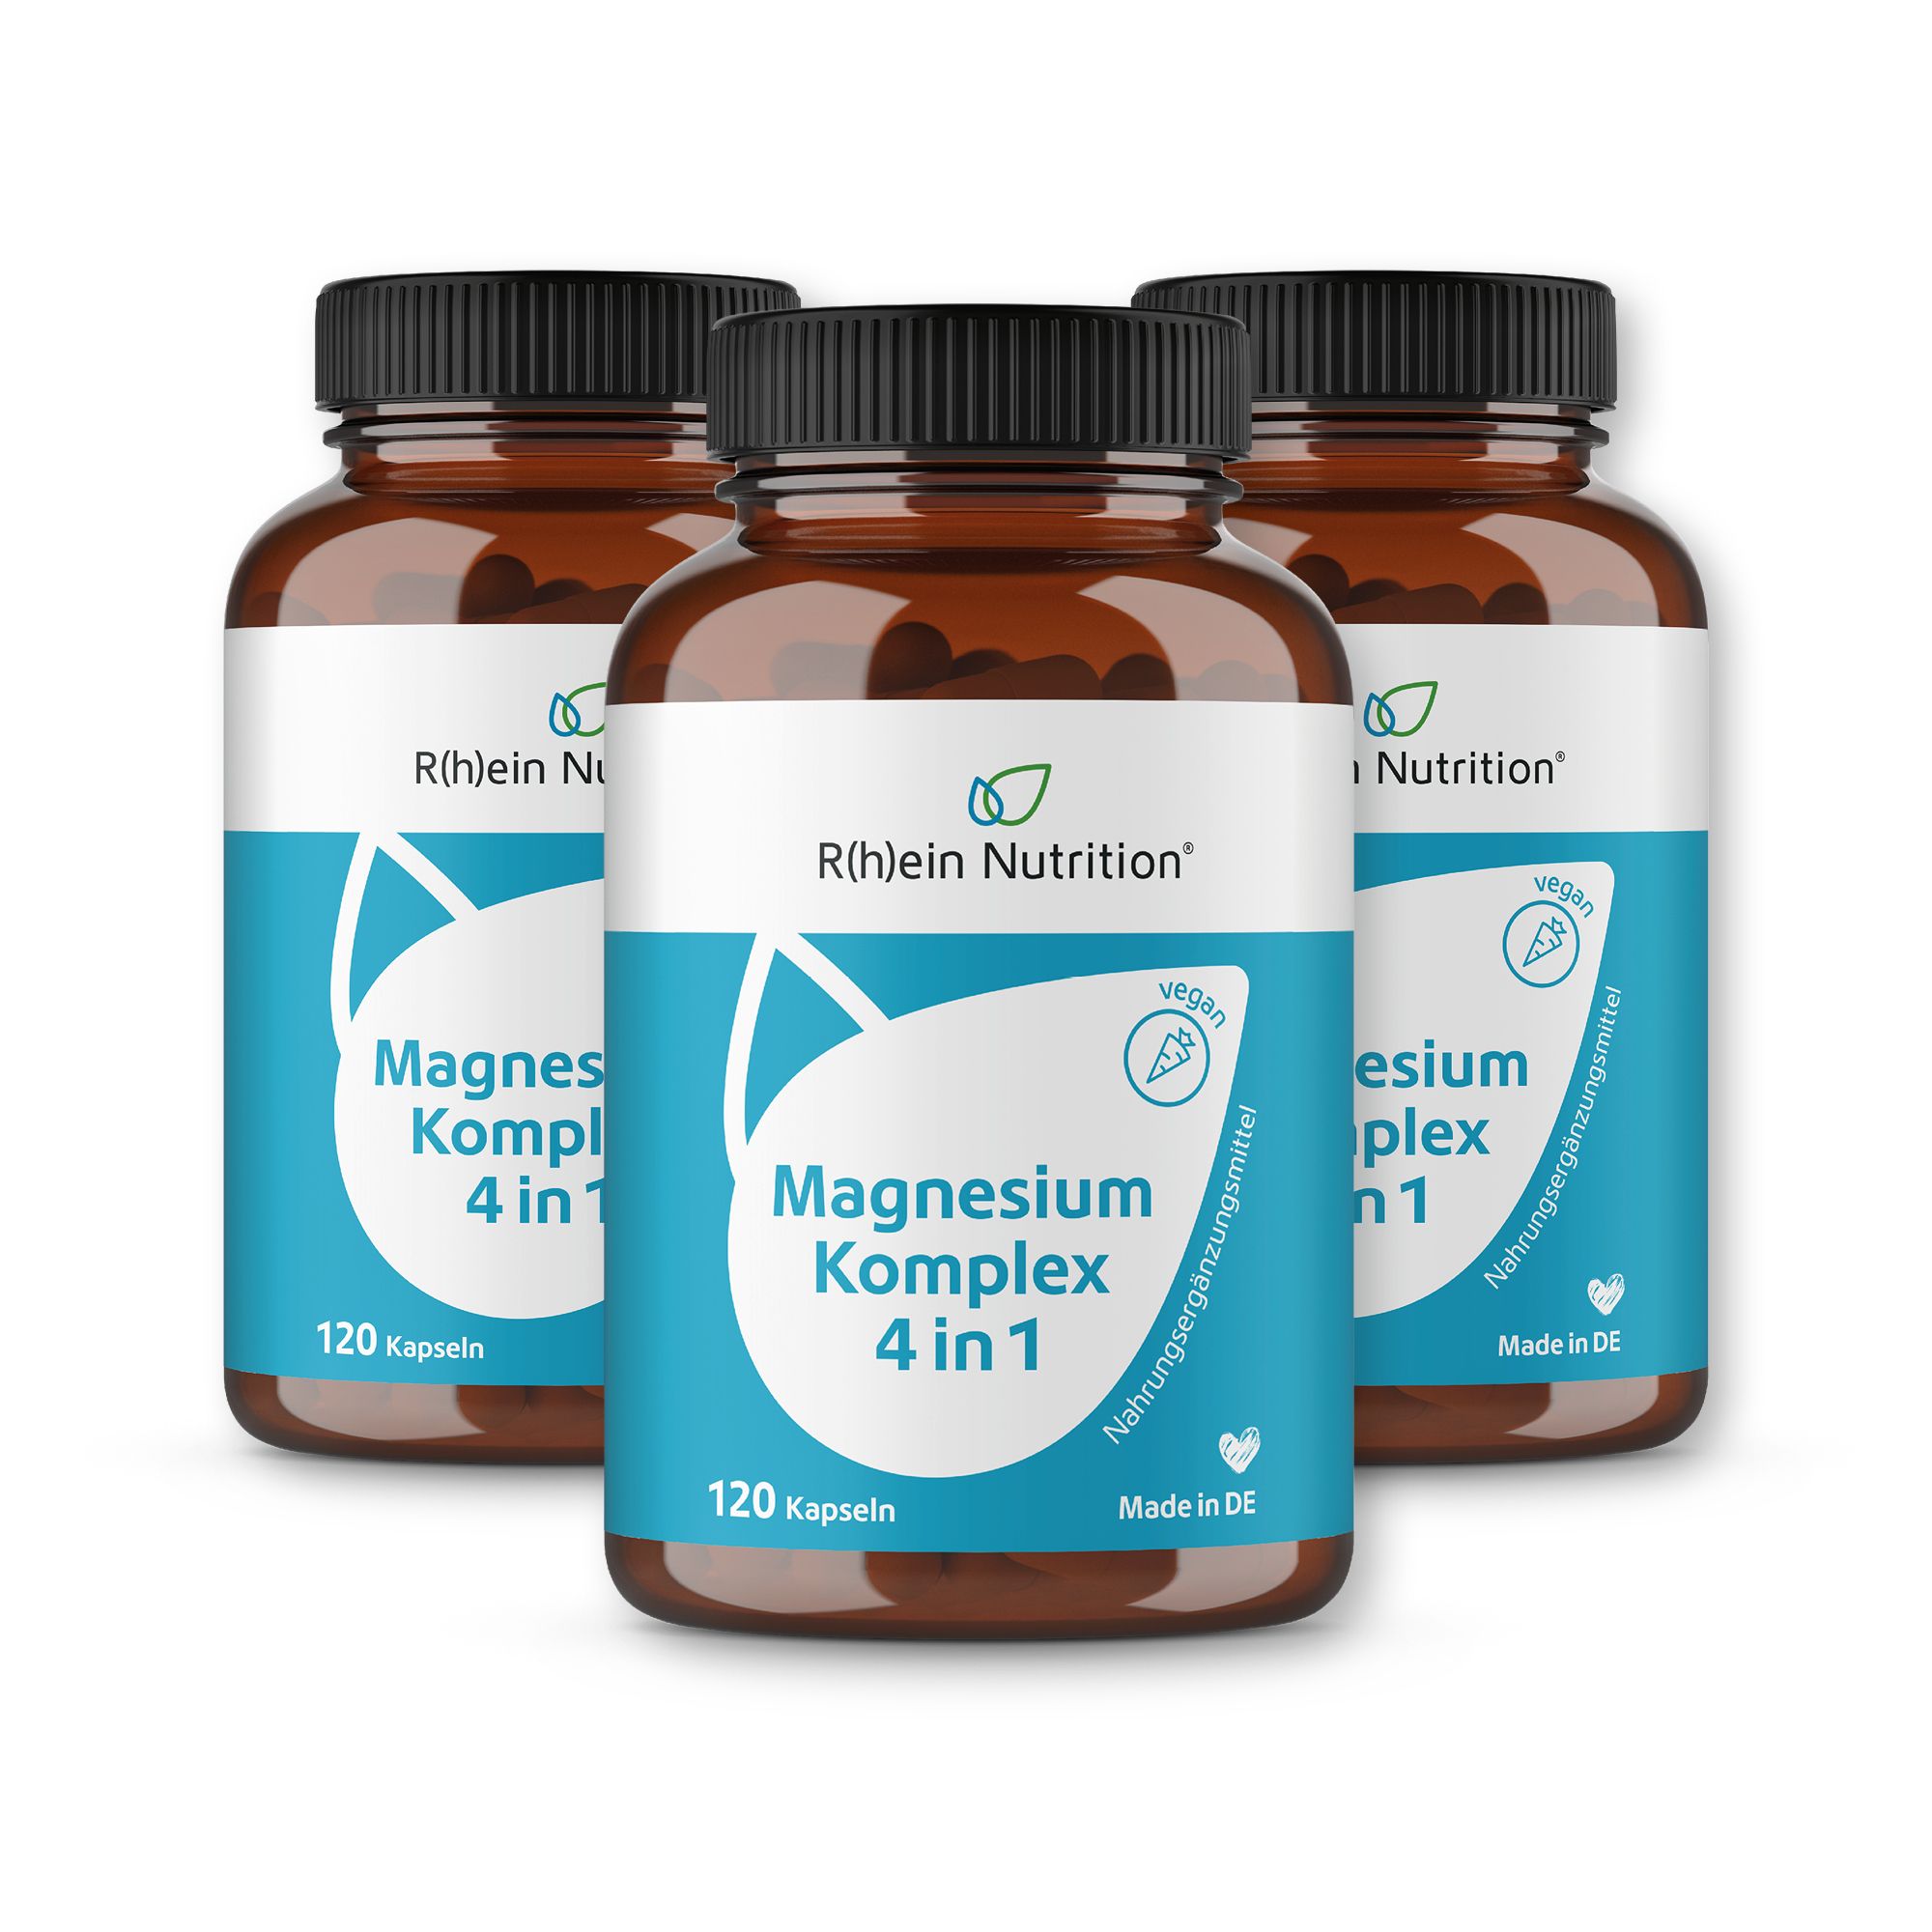 R(h)ein Nutrition Magnesium Komplex 4 in 1